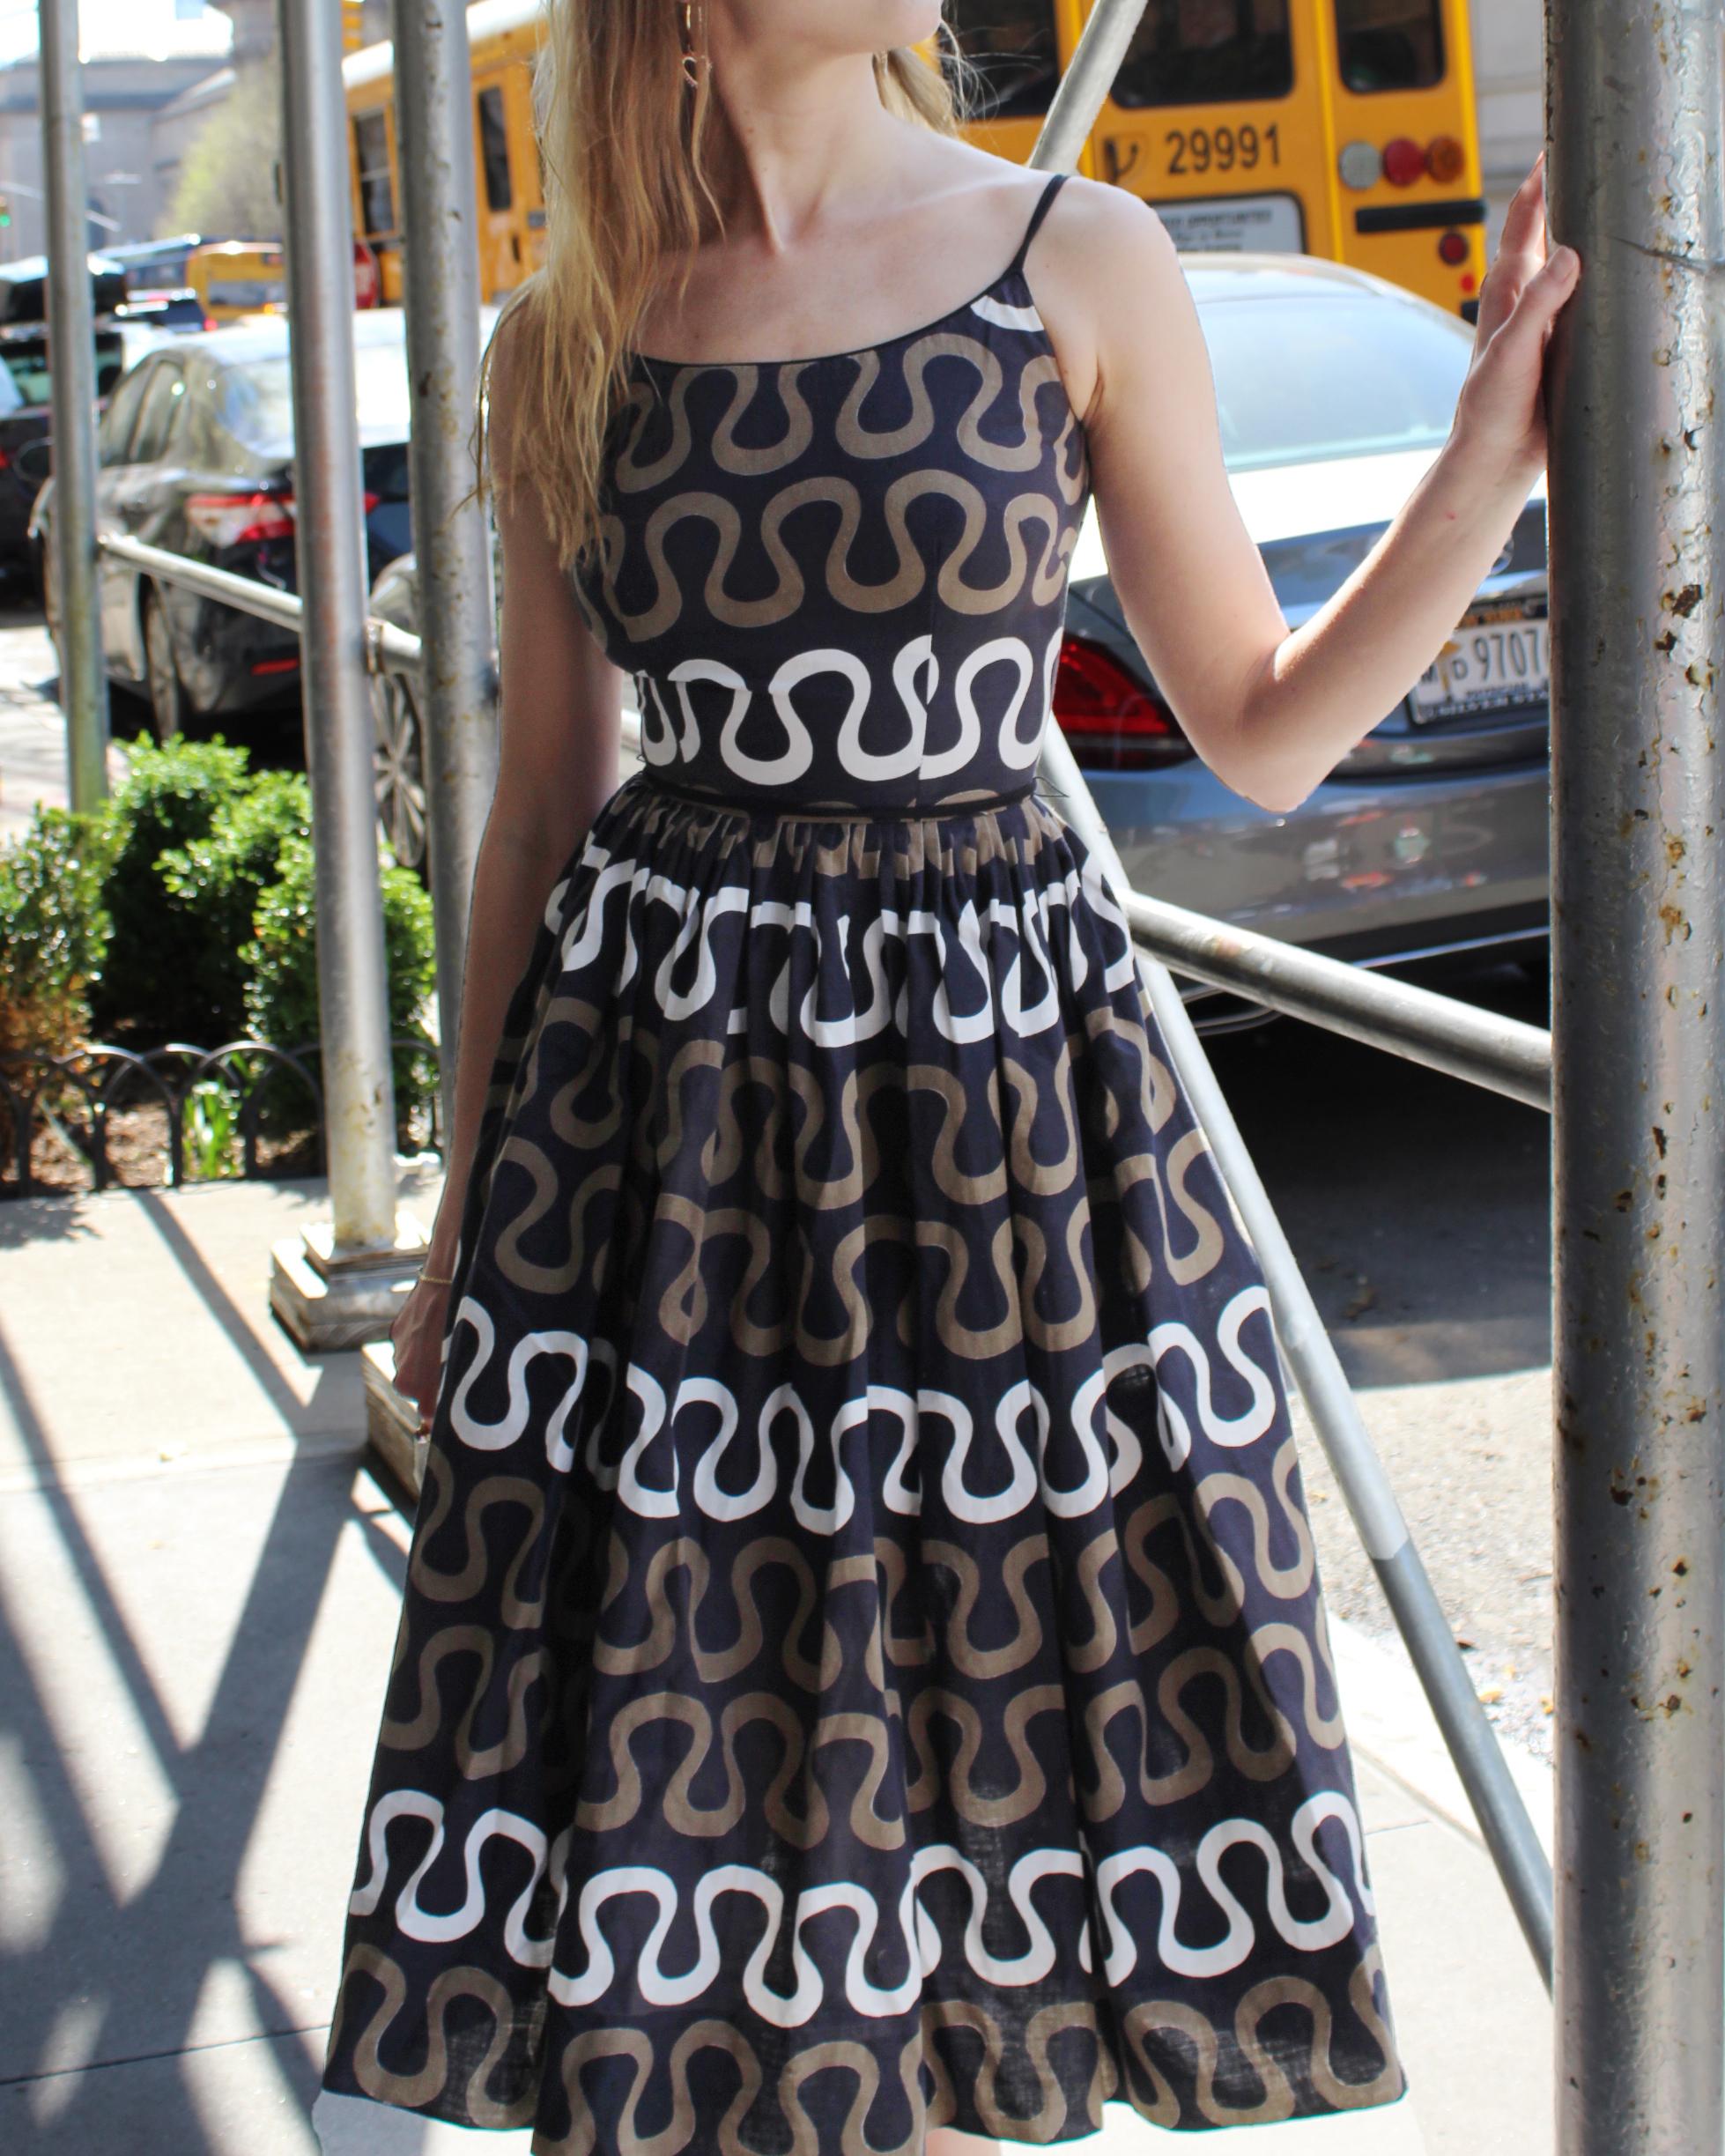 J'adore l'imprimé serpentin de cette robe de soleil vintage, à la fois géométrique et organique. Il est confectionné dans un coton respirant, parfait pour tous les temps. Il est si joliment construit : le corsage ajusté laisse place à une jupe